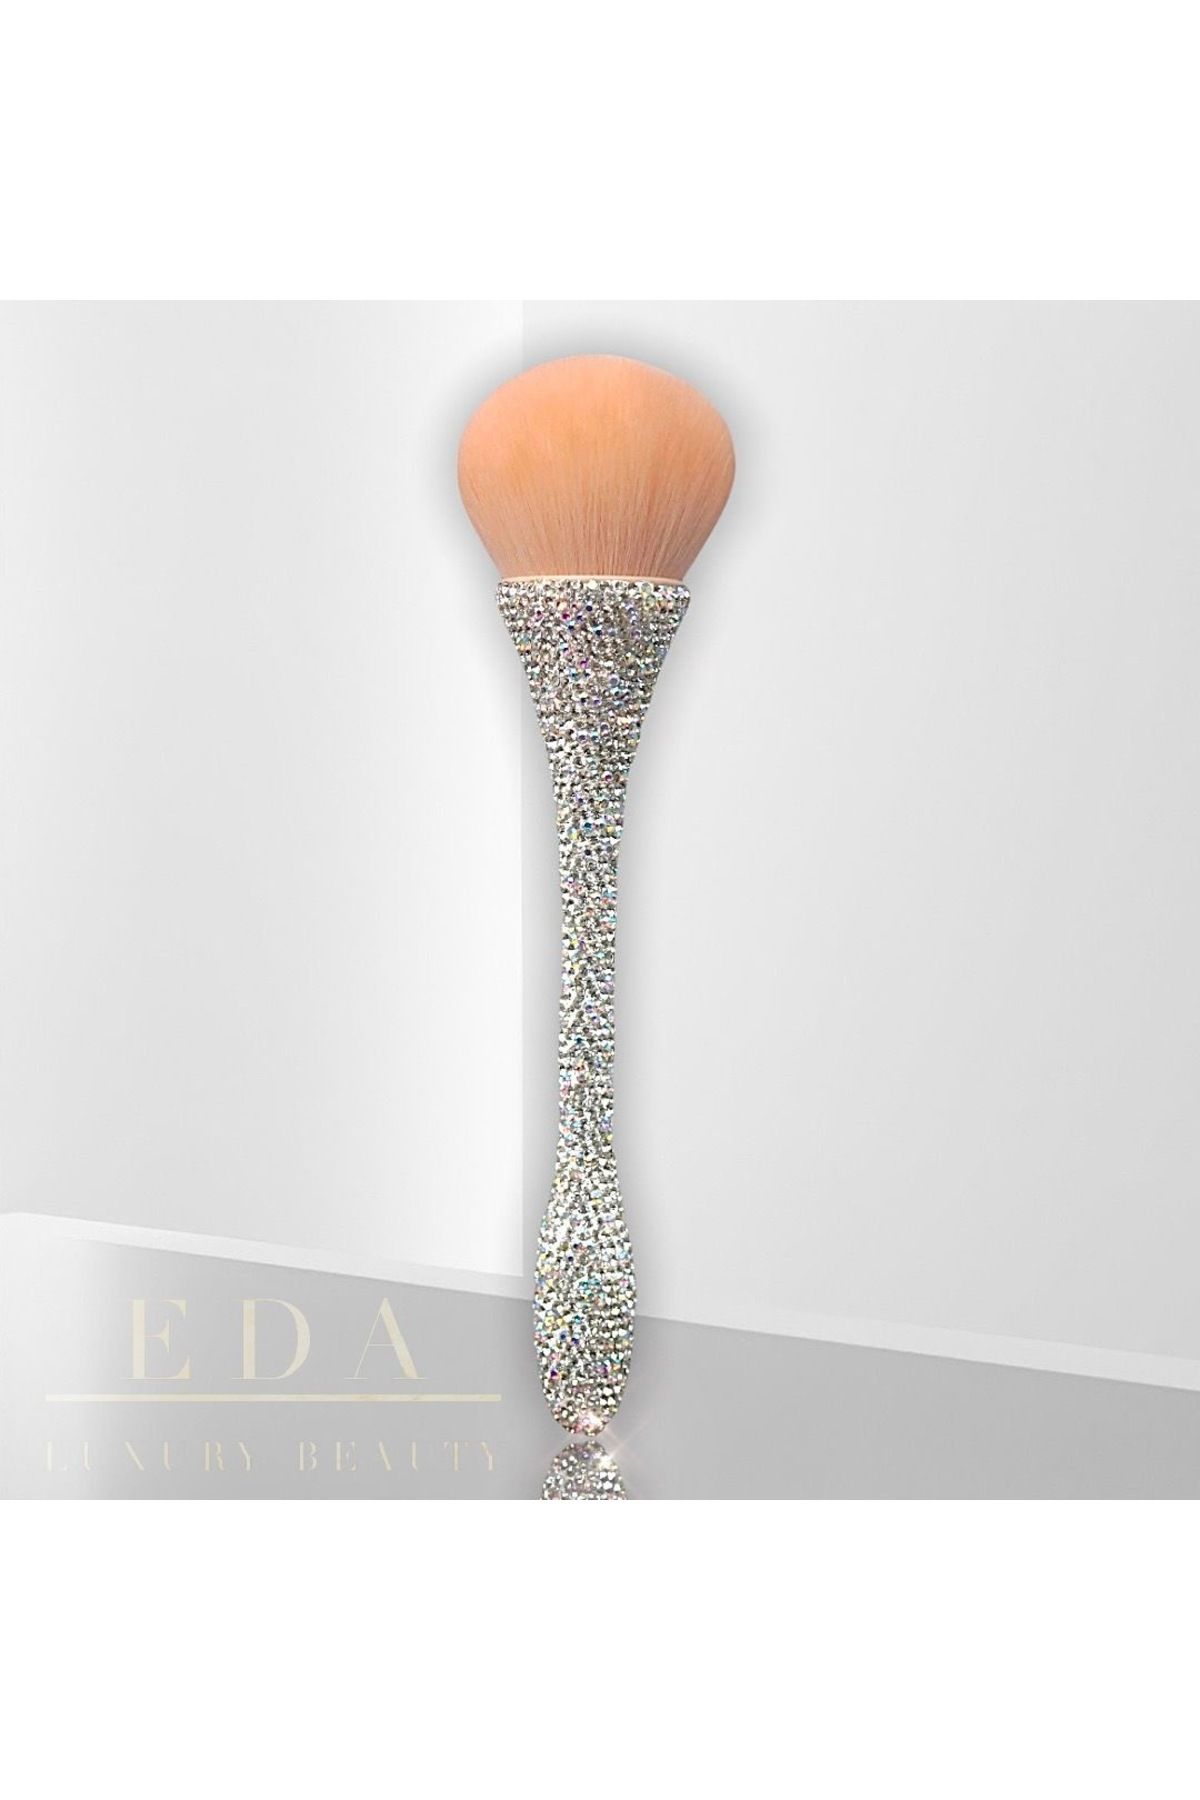 EDA LUXURY BEAUTY 360° Diamond 3d Swarovski Kristal Taşlı Büyük Makyaj Fırçası Crystal Masterpiece Luxury Makeup Brush